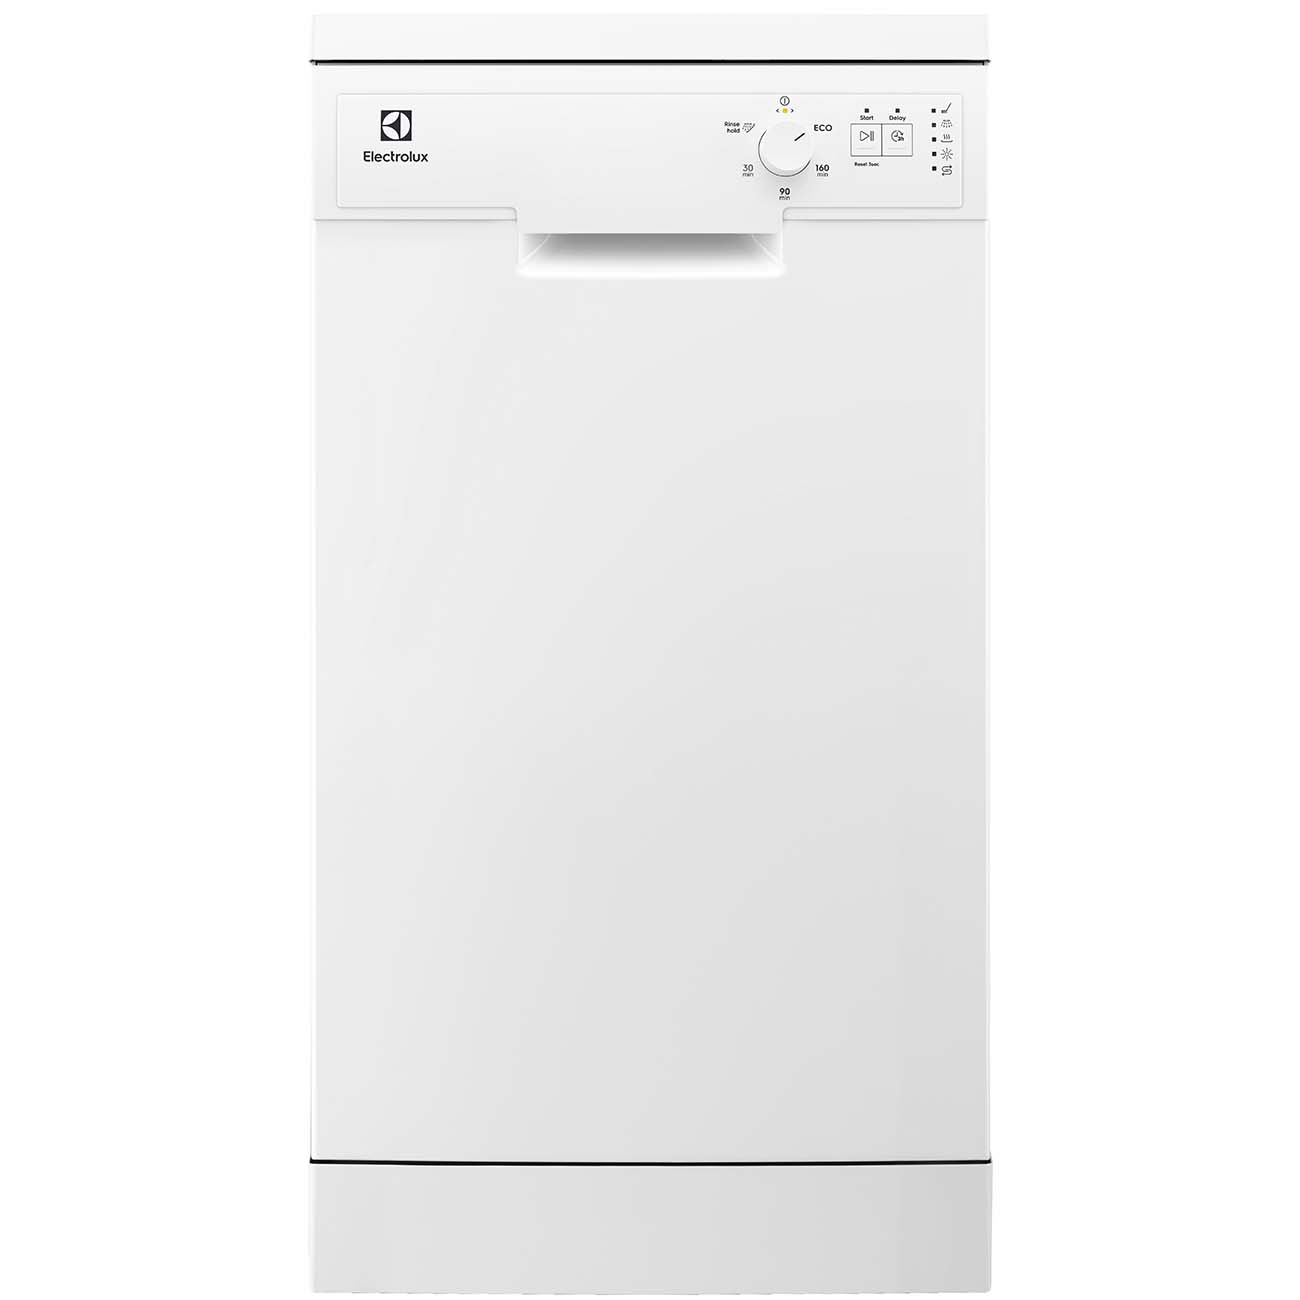 Посудомоечная машина Electrolux Electrolux Sea91211sw, цвет белый